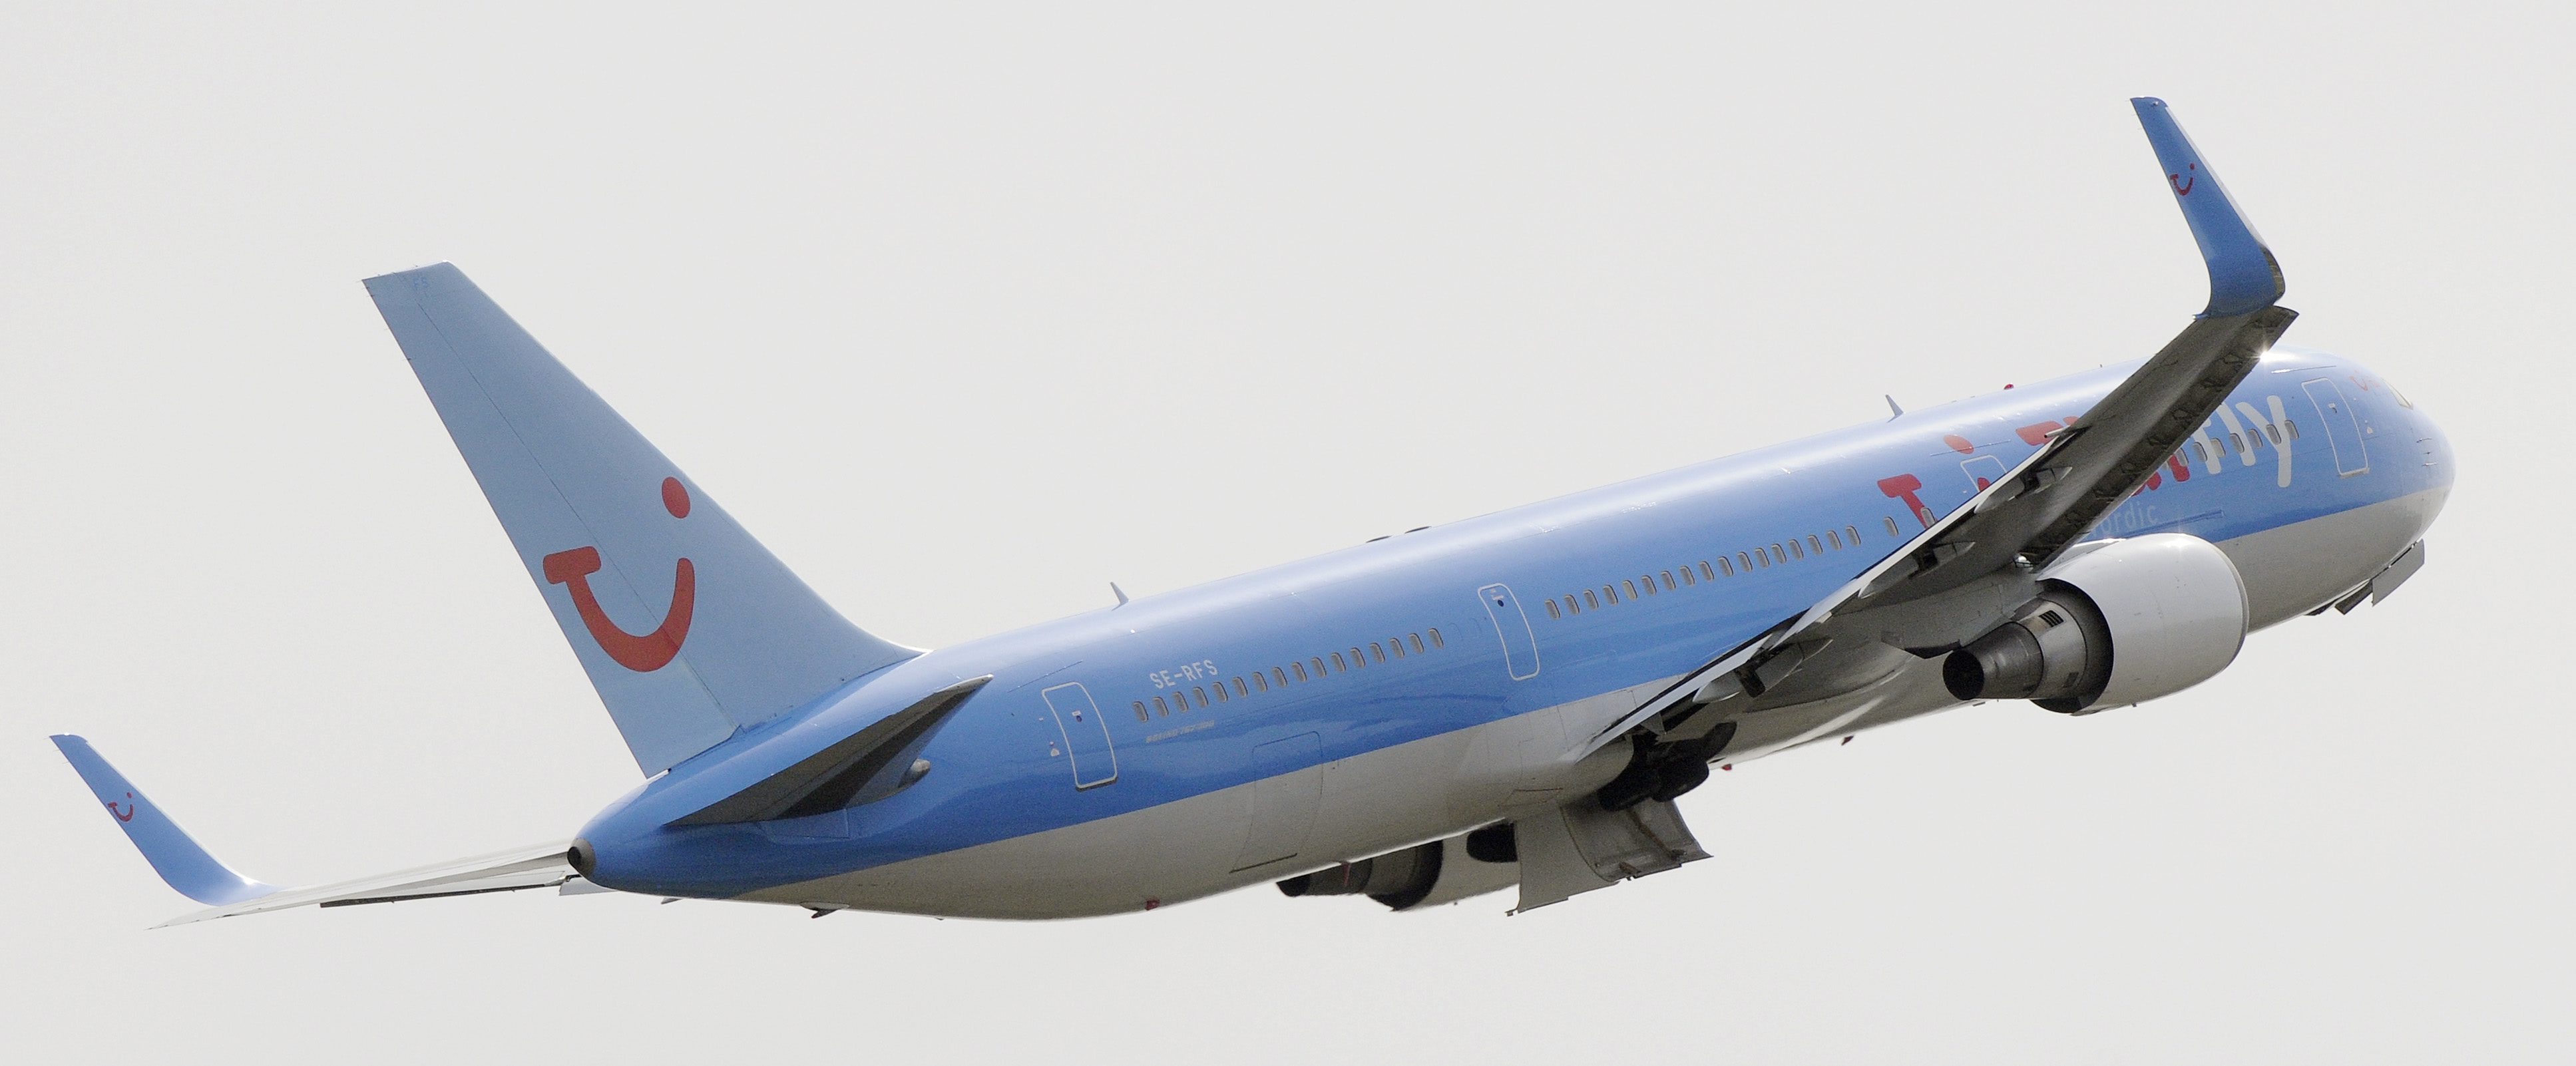 Planet i olyckan är enligt uppgift en Boeing 767.